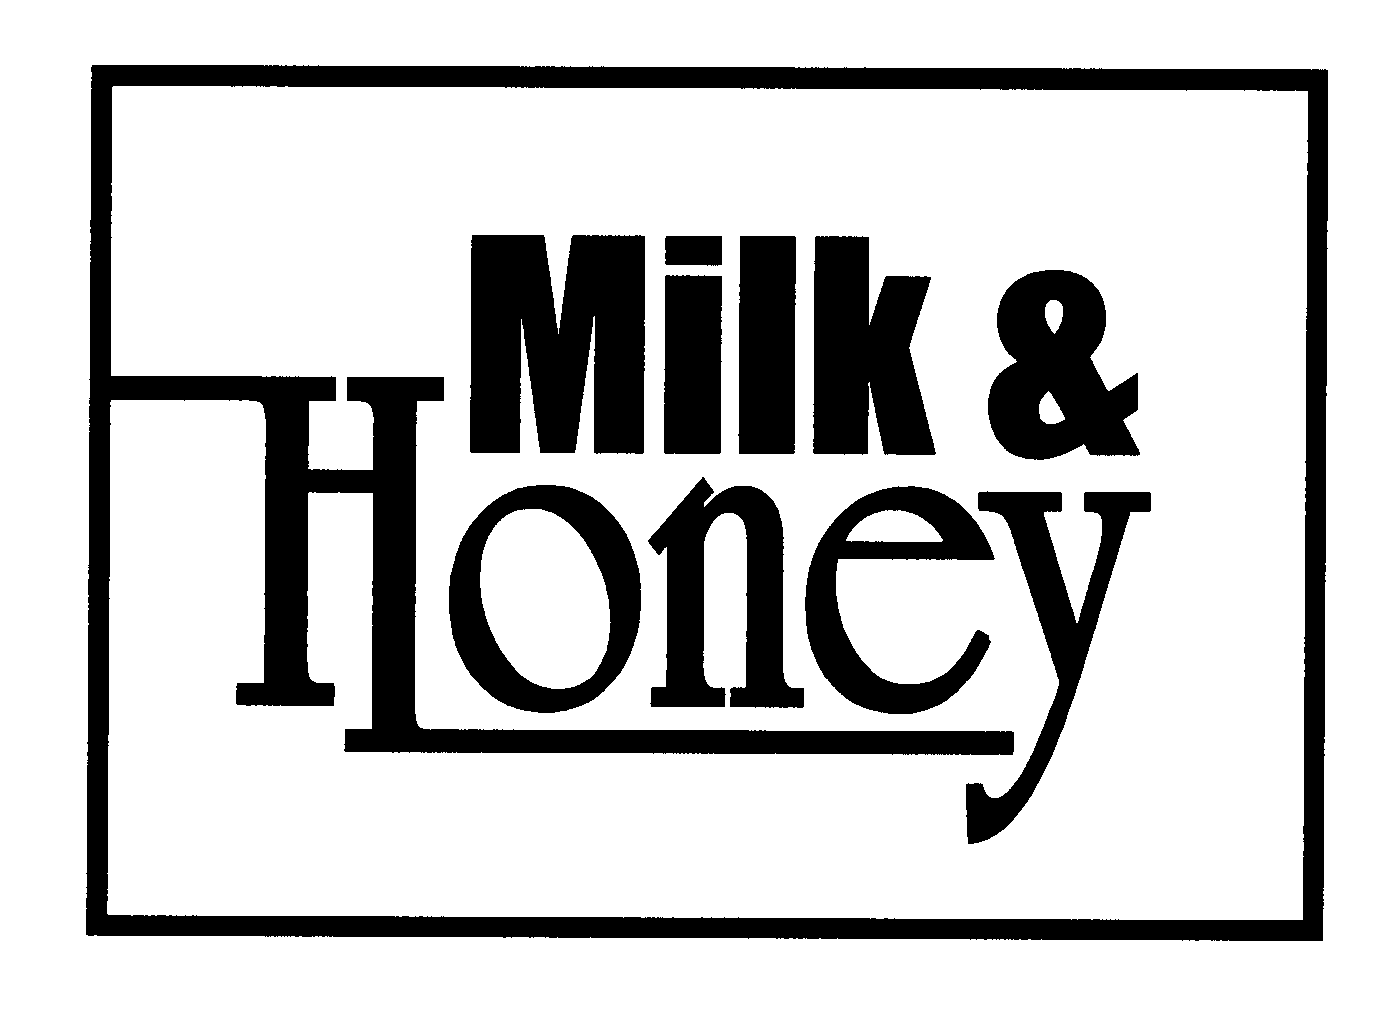 Trademark Logo MILK & HONEY